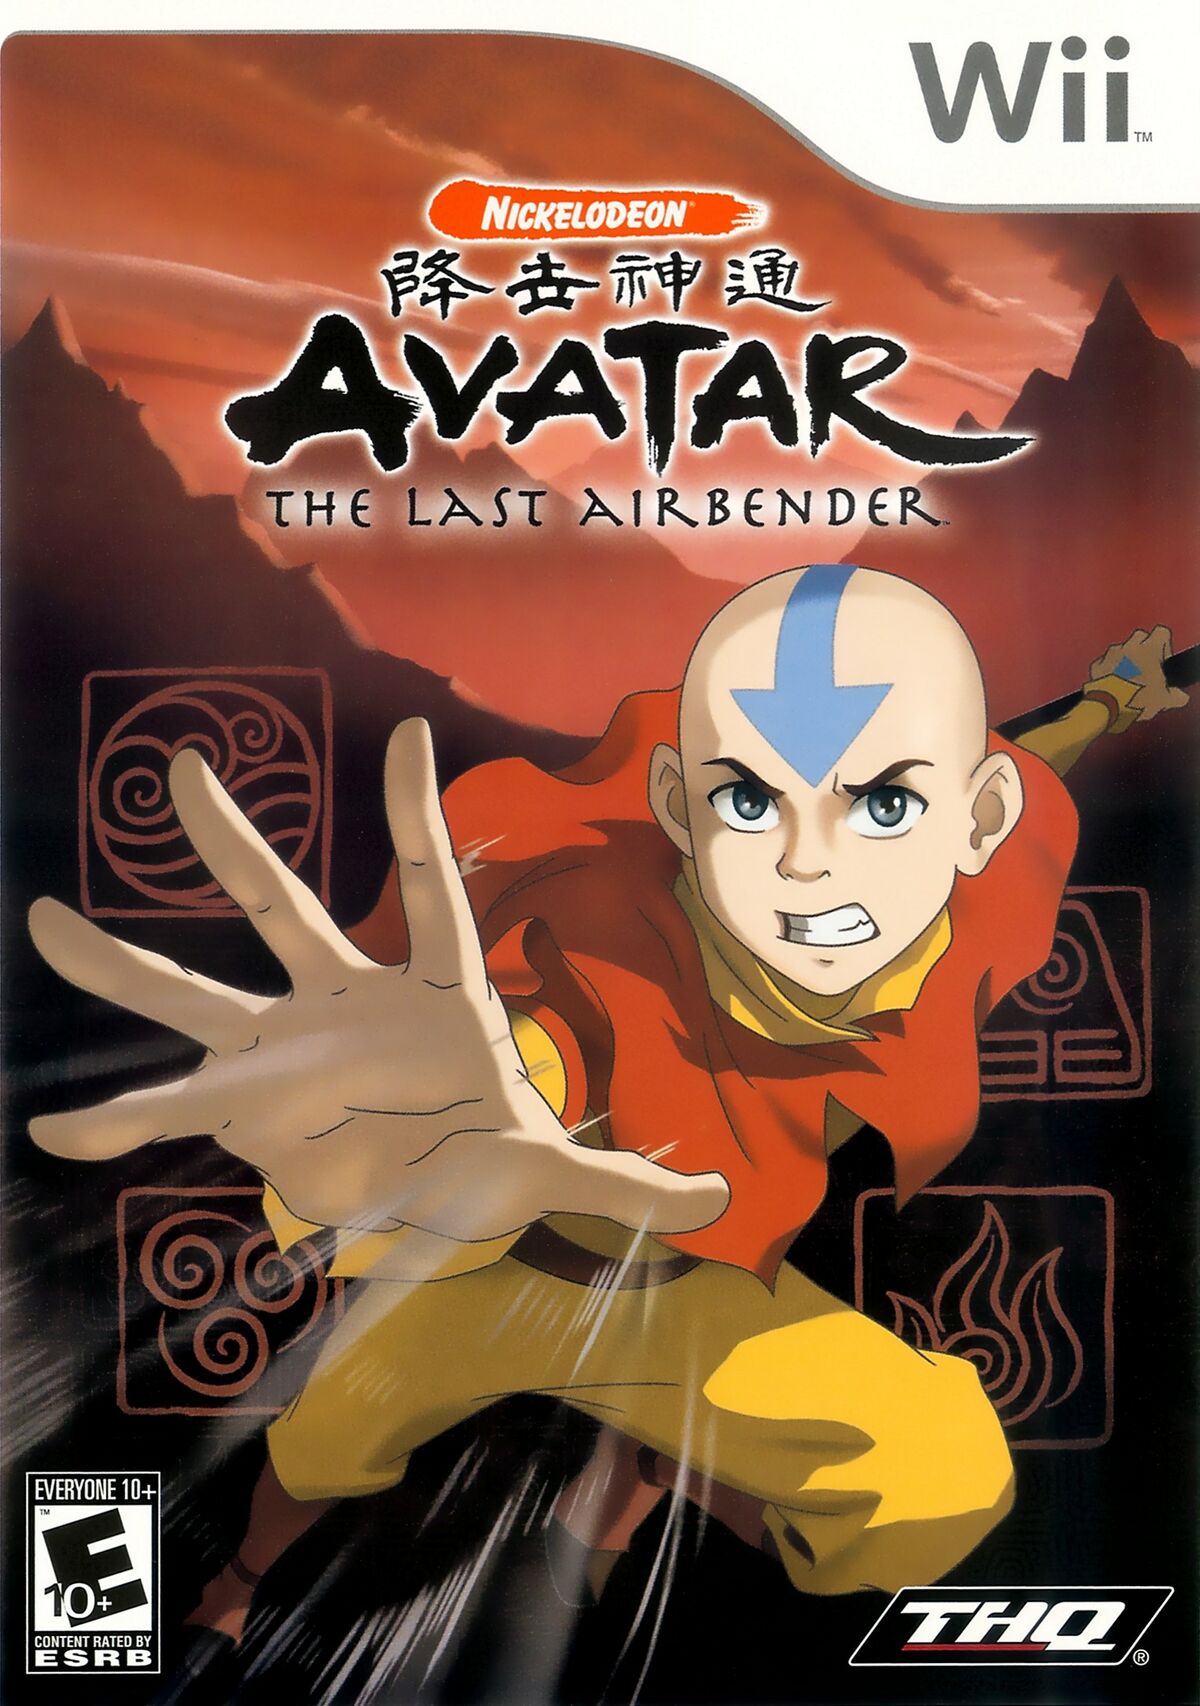 Ảo giác bản sao trên Wii với game Avatar the Last Airbender sẽ khiến bạn quên mất thế giới xung quanh. Sử dụng tính năng giả lập để trải nghiệm những trận chiến kịch tính và khám phá thế giới vô tận. Nhấp vào hình ảnh để tìm hiểu thêm về trò chơi này.